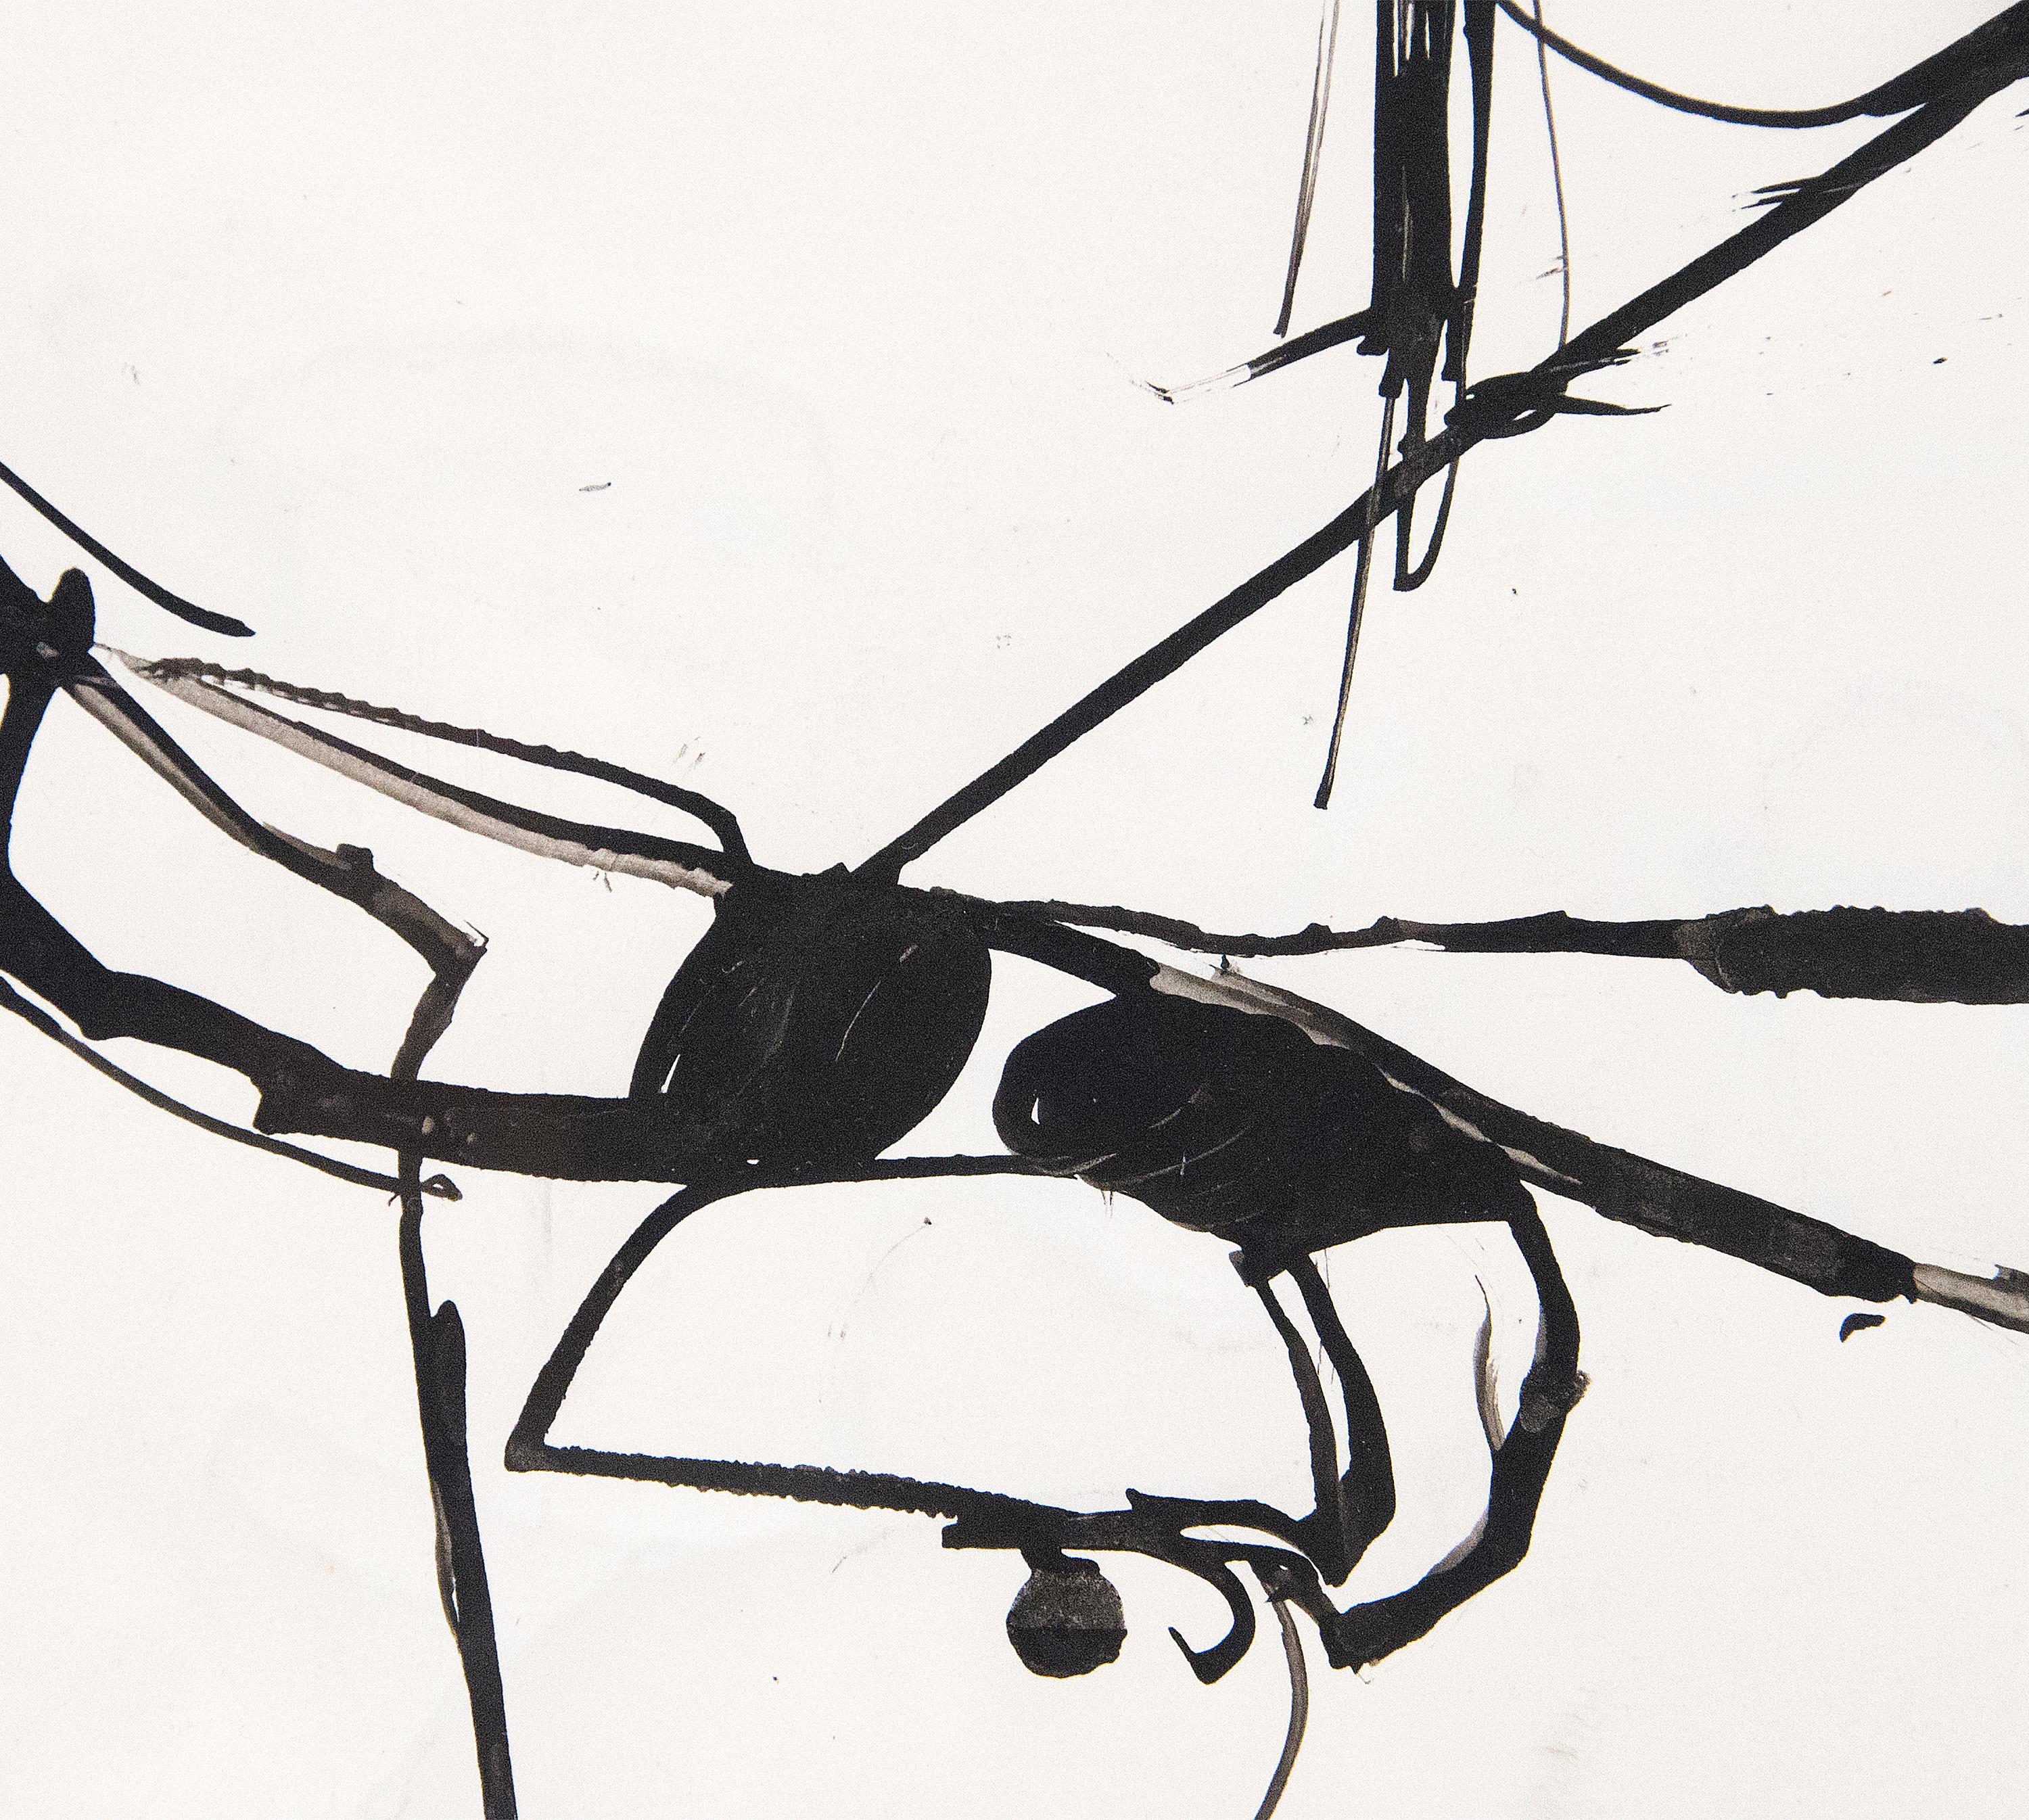 Un dessin de Richard Diebenkorn. Cette œuvre sans titre de la série Urbana est un dessin abstrait à l'encre sur papier de l'artiste figuratif et expressionniste abstrait de l'après-guerre, Richard Diebenkorn. Signé en bas à gauche, 